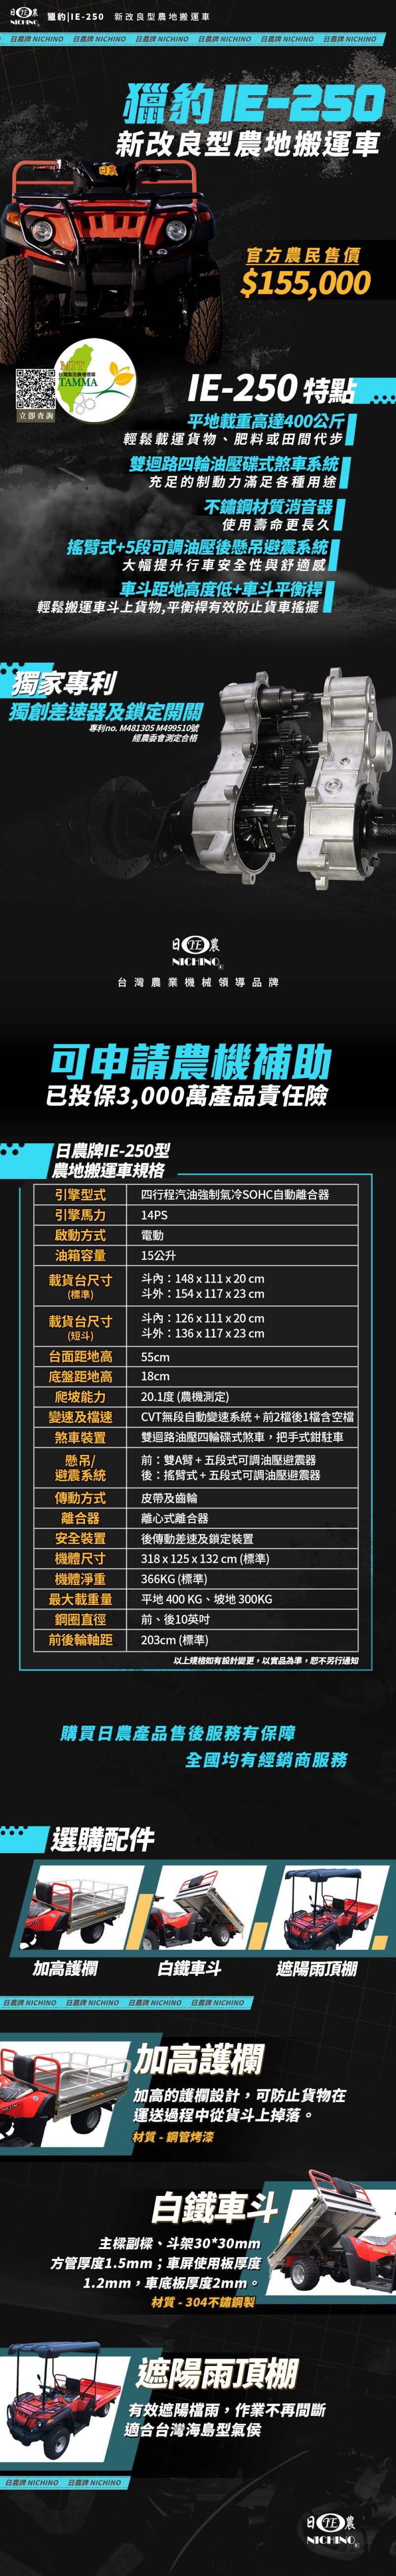 IE-250 - 中文上架圖